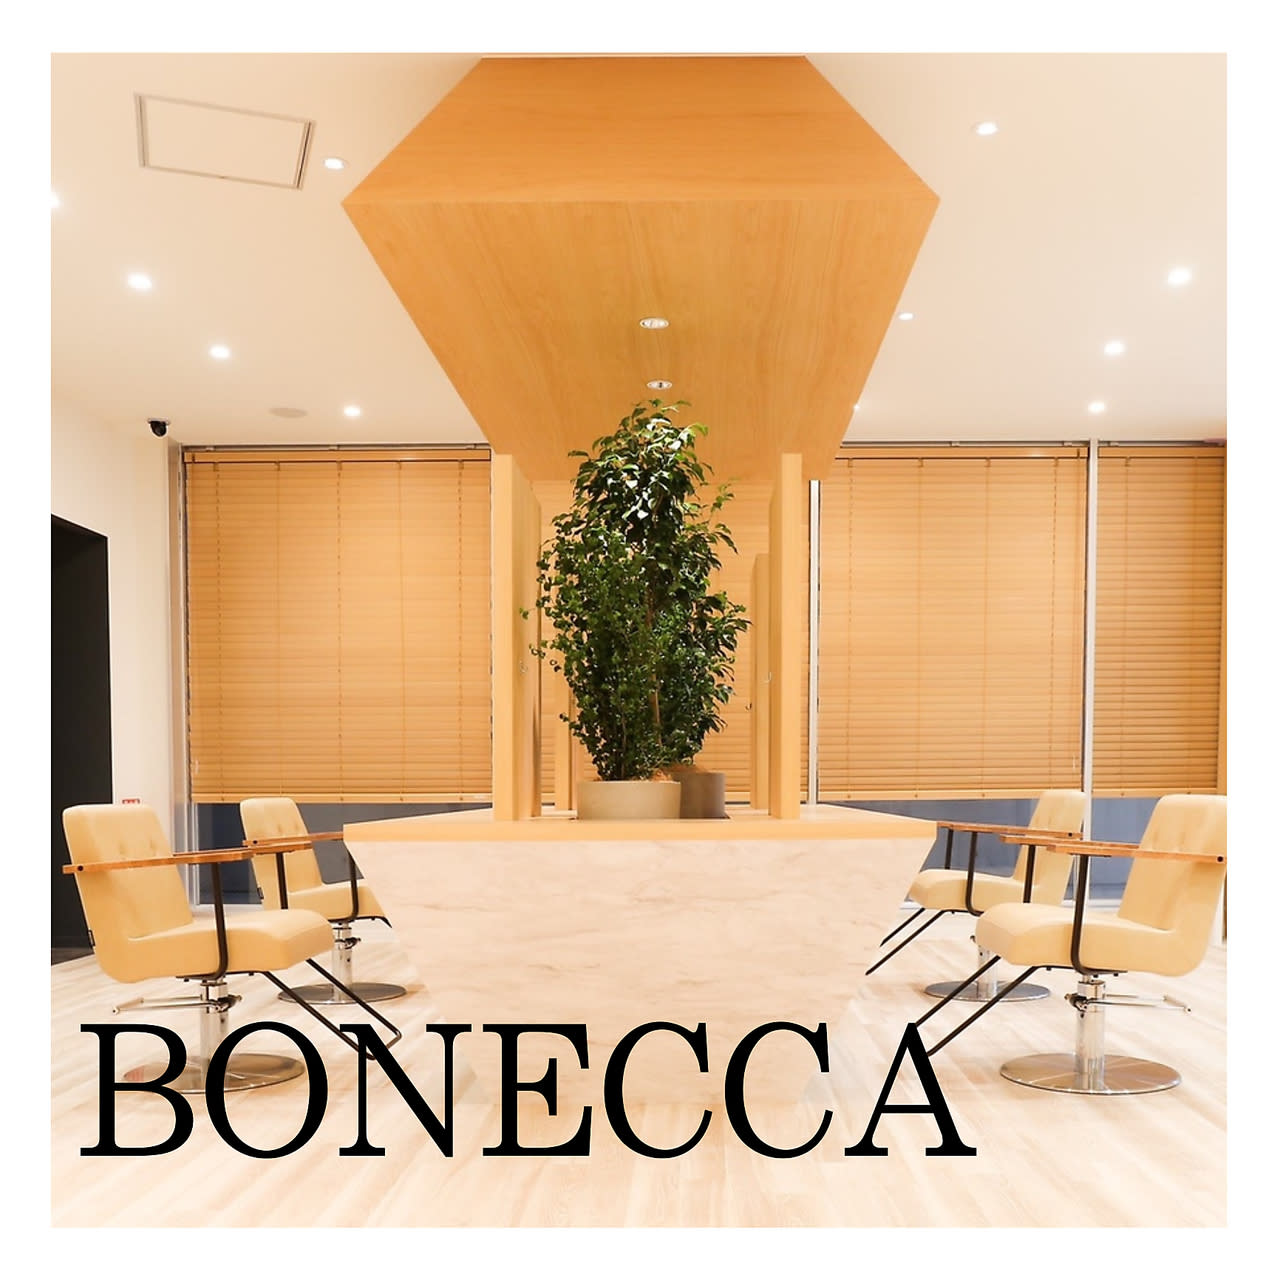 BONECCAのアイキャッチ画像